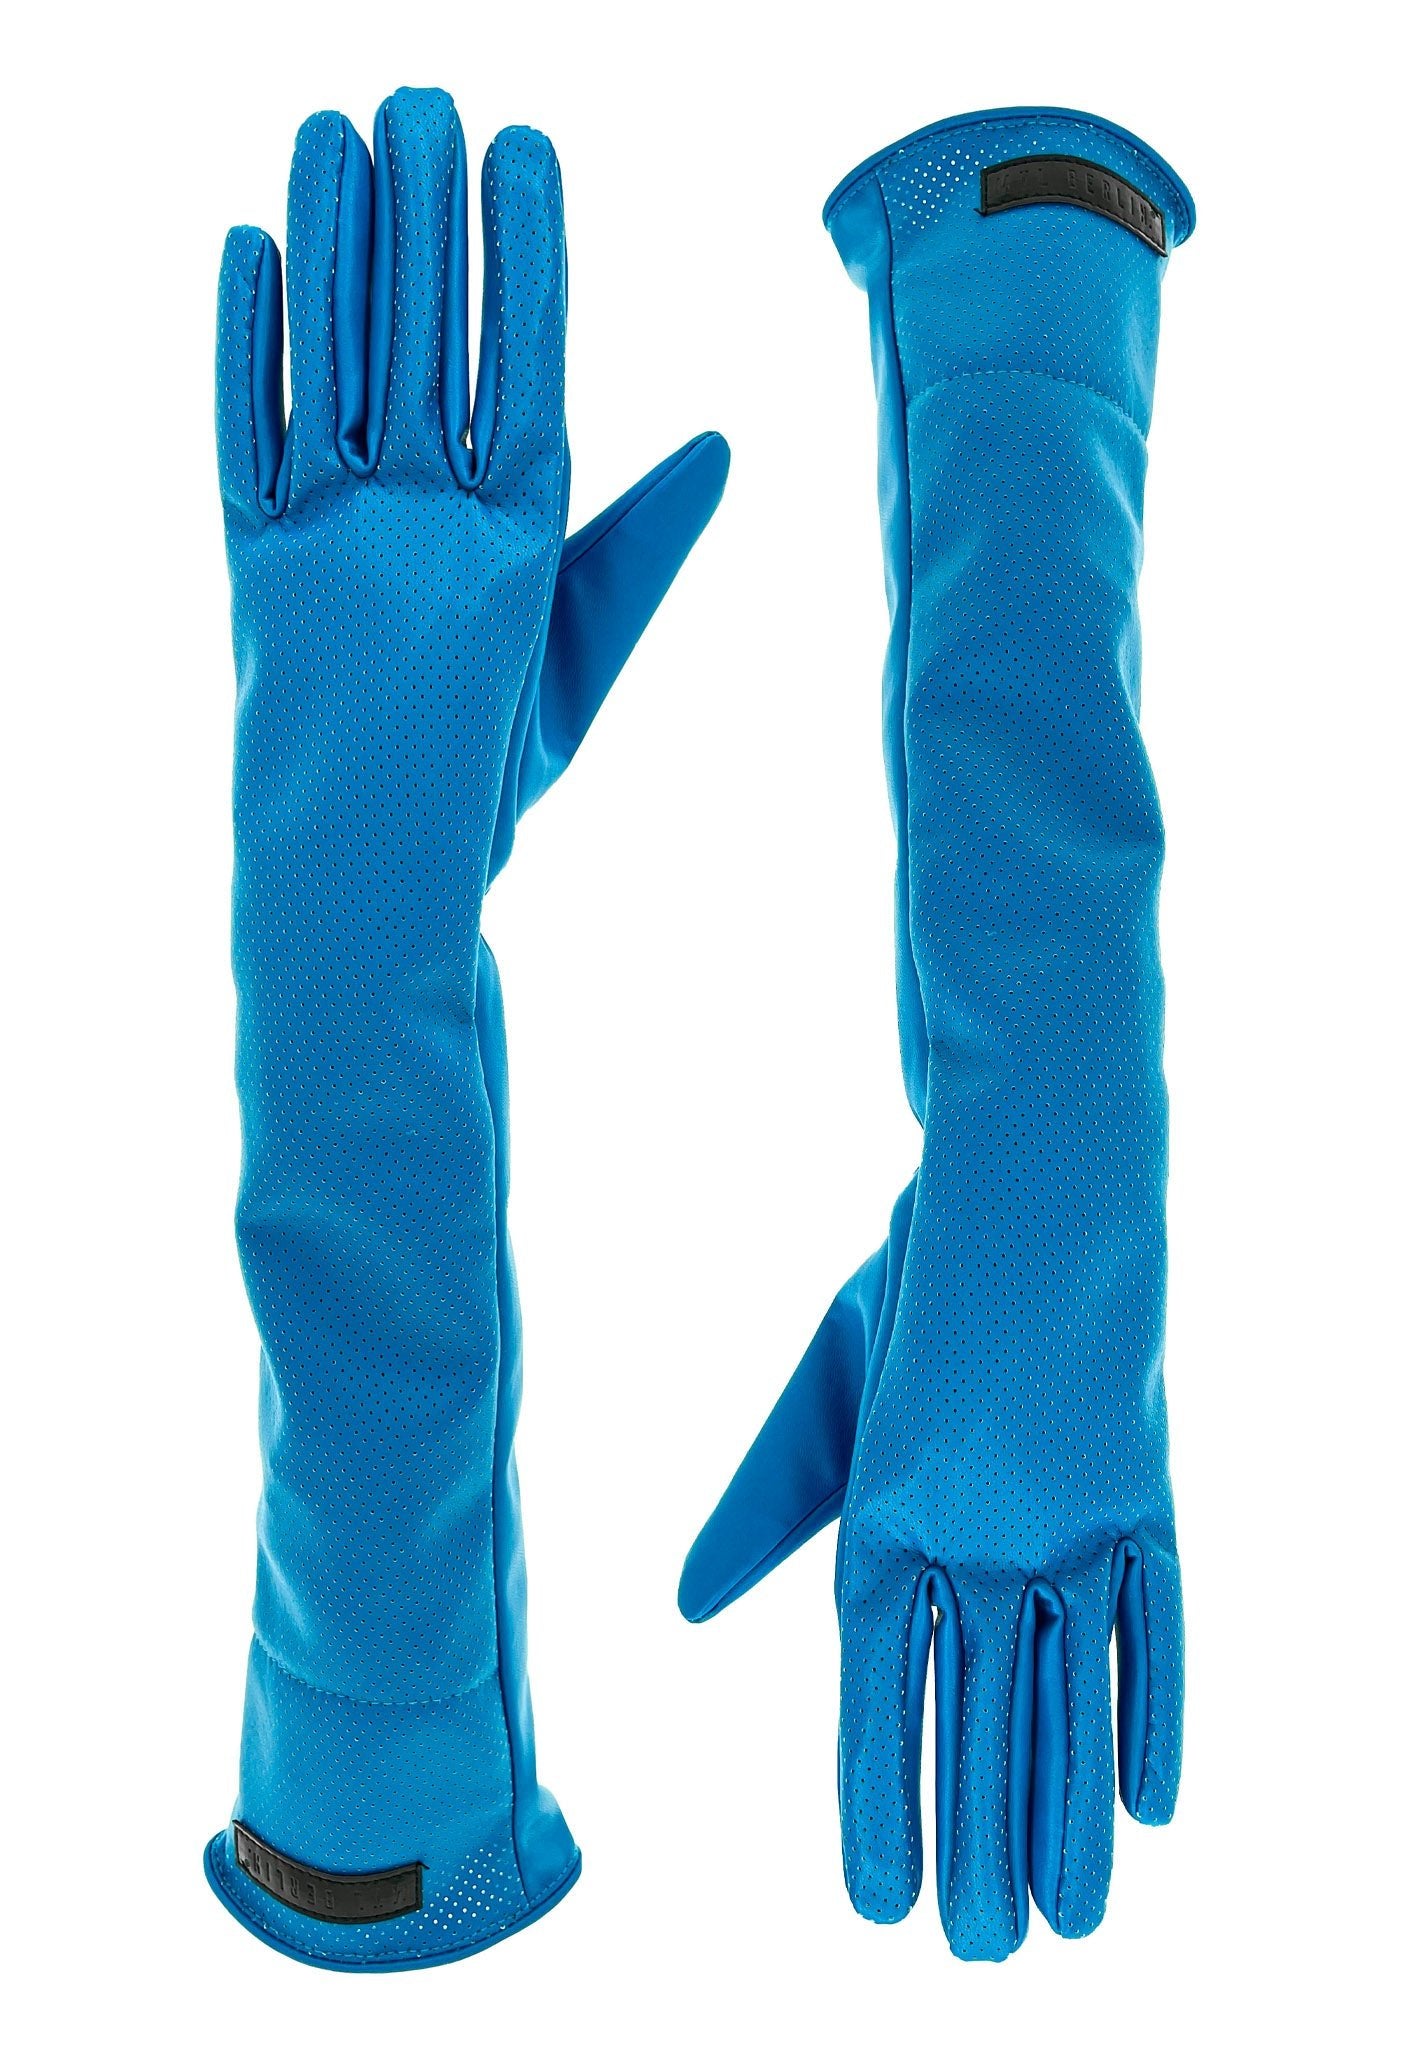 Long Leather Gloves With Elegenat Hole Pattern - MYL BERLIN - 4260654112832